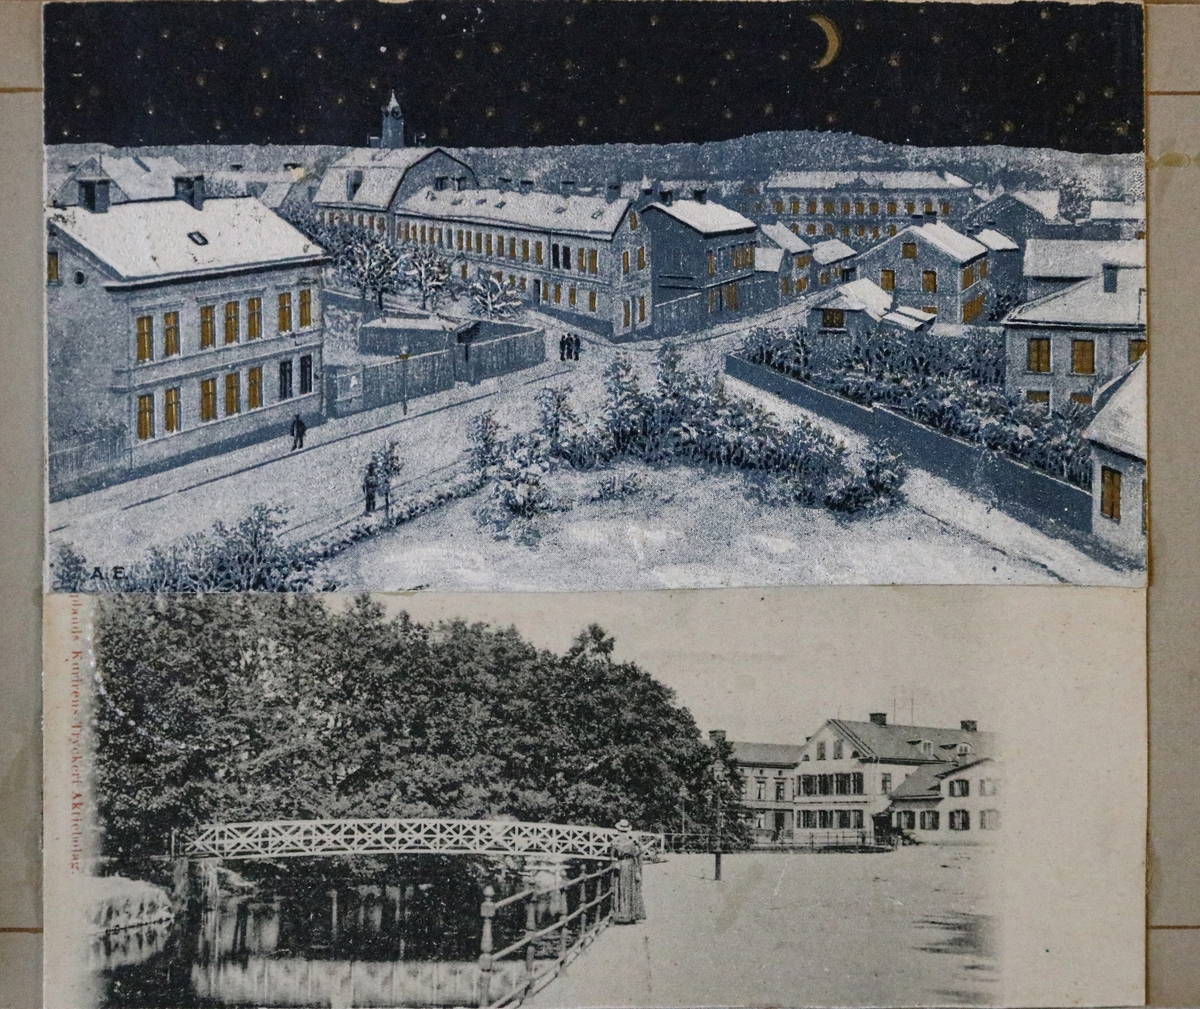 Två beskurna vykort inklistrade i vykortsalbum. Det övre vykortet har motiv av övre Kyrkogatan och Rådhusgatan, Enköping. Fotot är troligen taget från tingshustornet, vilket i så fall daterar bilden till tidigast 1895. Och senast 1898 eftersom det s.k. telegrafhuset i vänster bildkant uppvisar det äldre utseendet. Fotograf Anders Willmanson (1853-1924). I bild ser vi bl.a. rådhuset, huslängan "Långholmen/Strykjärnet", Stadshotellet och i förgrunden den trekantiga ytan som år 1900 iordningställdes till park - i början kallad "Trekanten", sedermera "Afzelii plan". Vykortet är handkolorerat.
Det nedre vykortet har motiv från hamnen/Enköpingsån med gångbron från Munksundet till Hamngatan. Fotot är taget omkring år 1900 av Hilda Isaeus (1858-1917) som arbetade som fotograf i Enköping 1897-1917. Denna sida i albumet har lossnat och ligger löst i pärmen.